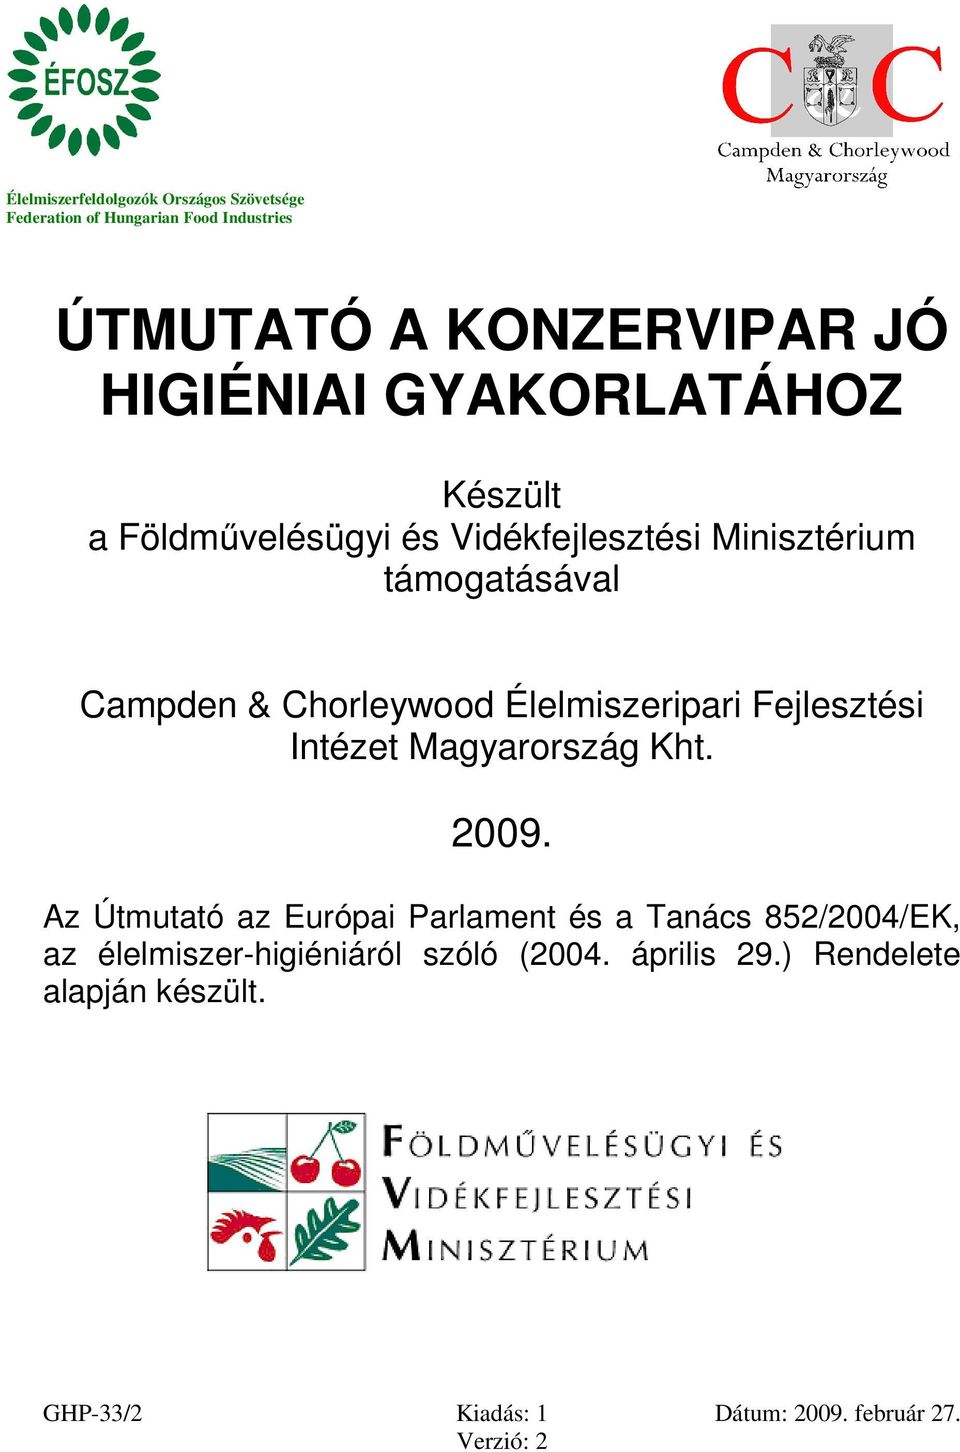 Campden & Chorleywood Élelmiszeripari Fejlesztési Intézet Magyarország Kht. 2009.